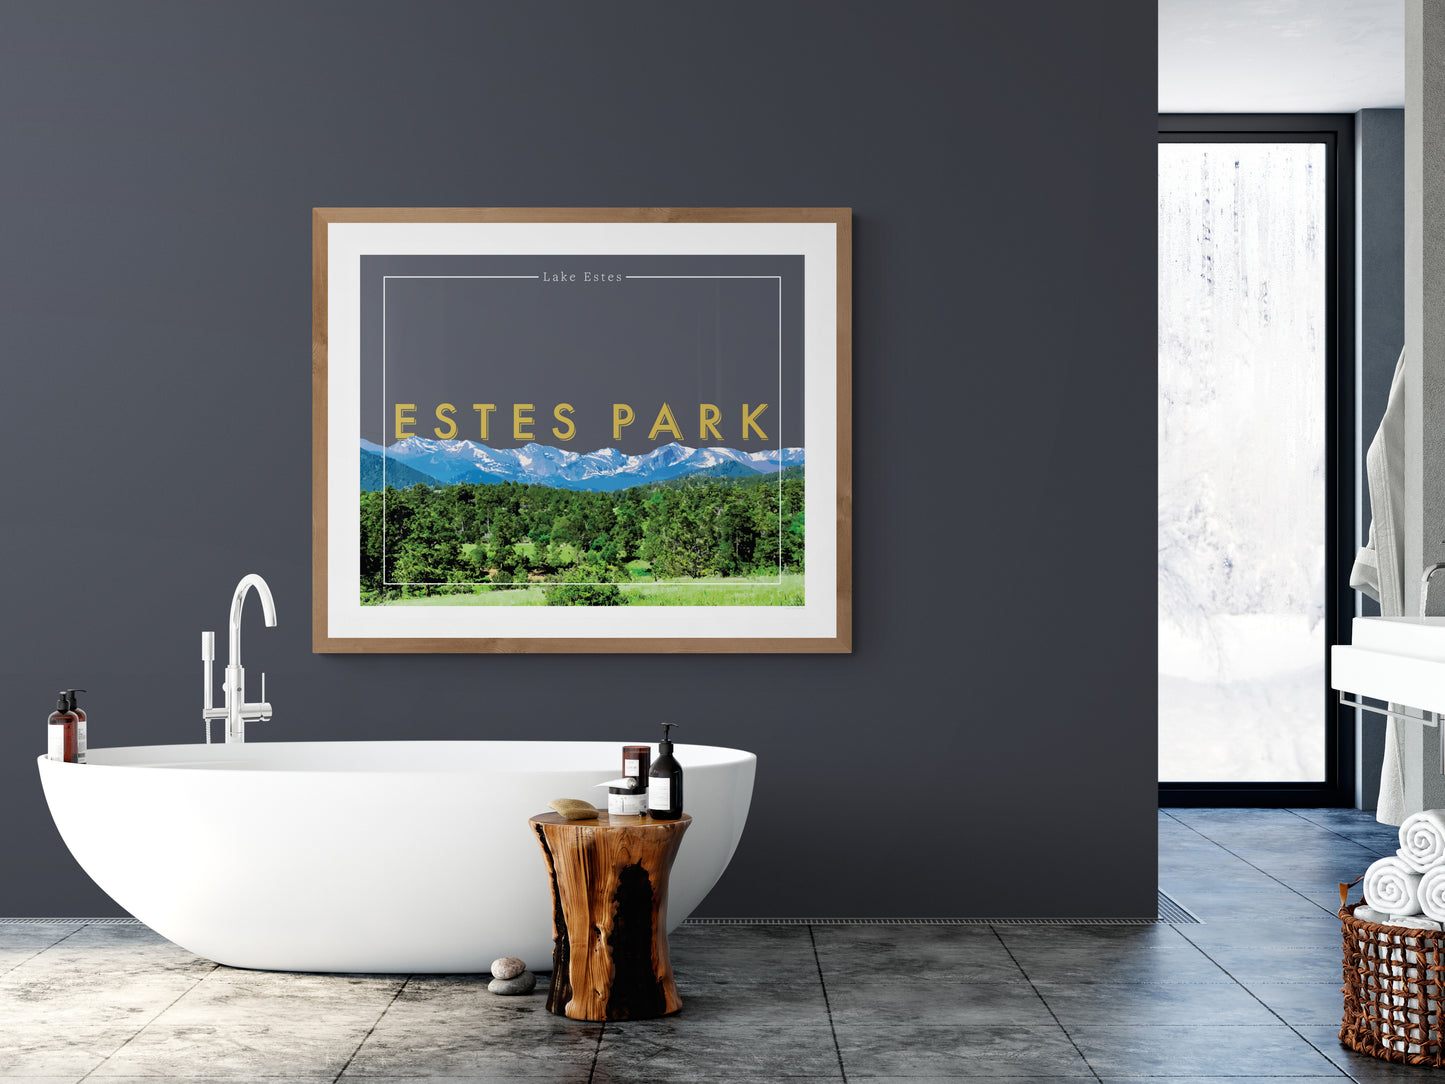 Estes Park, Colorado - Lake Estes, Wall Art, Print Only (No Frame)